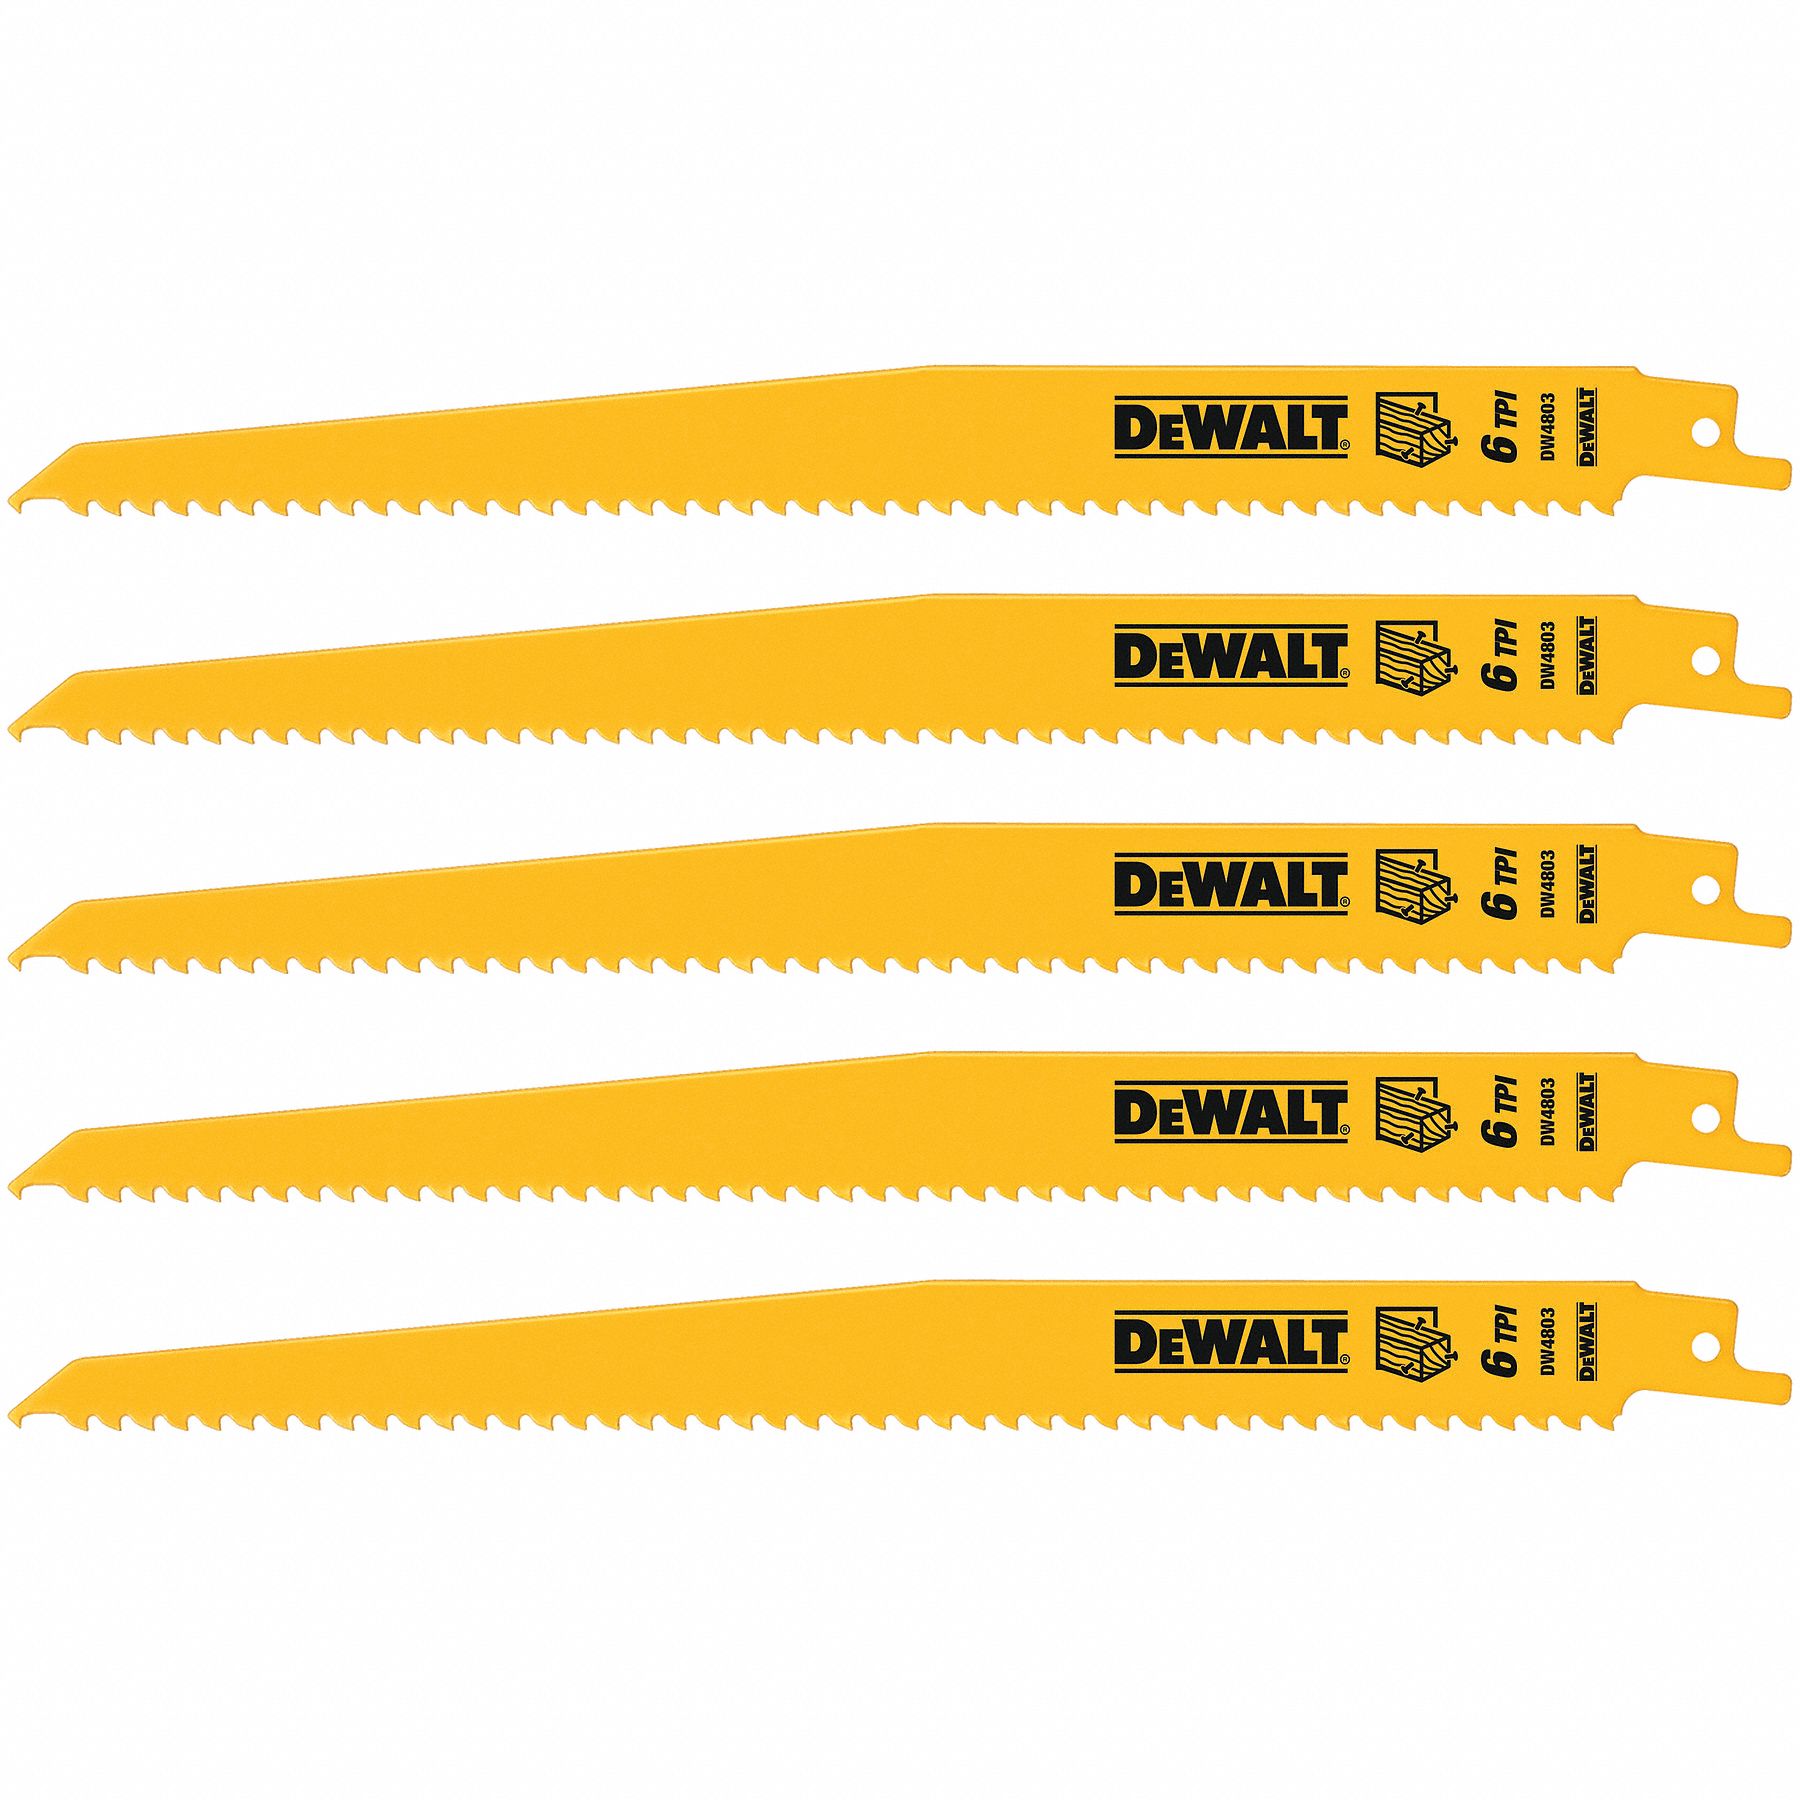 Dewalt Recip Saw Blades Clearance, 52% OFF | www.propellermadrid.com